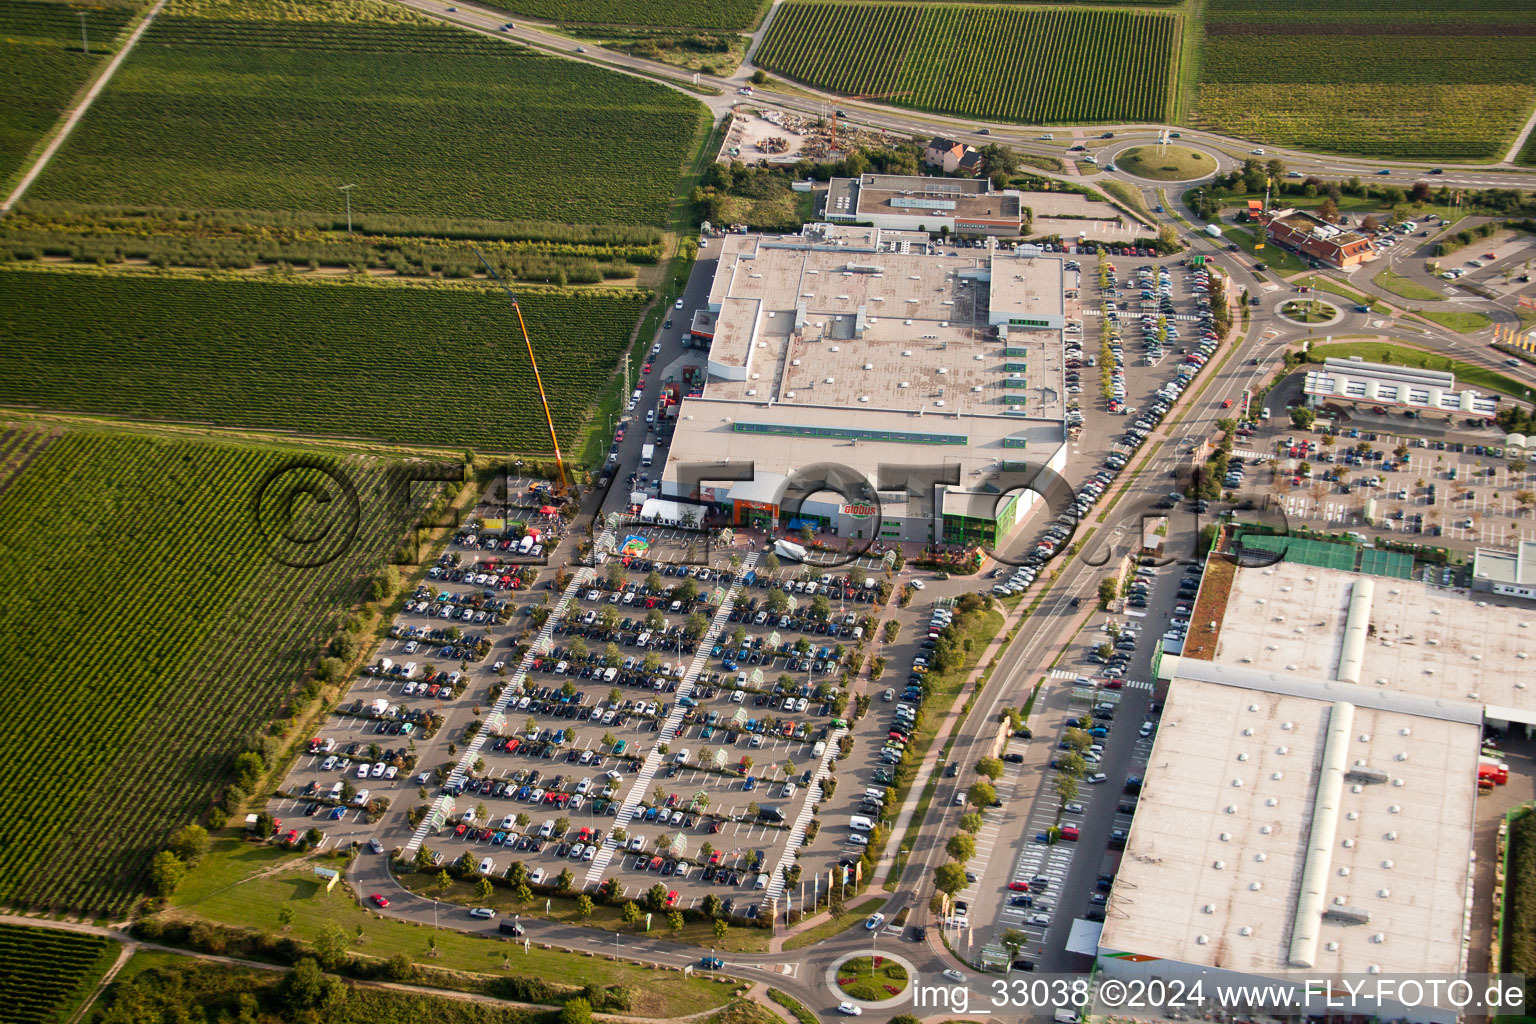 Aerial view of Retail park: Dehner, Hela, Globus in Neustadt an der Weinstraße in the state Rhineland-Palatinate, Germany